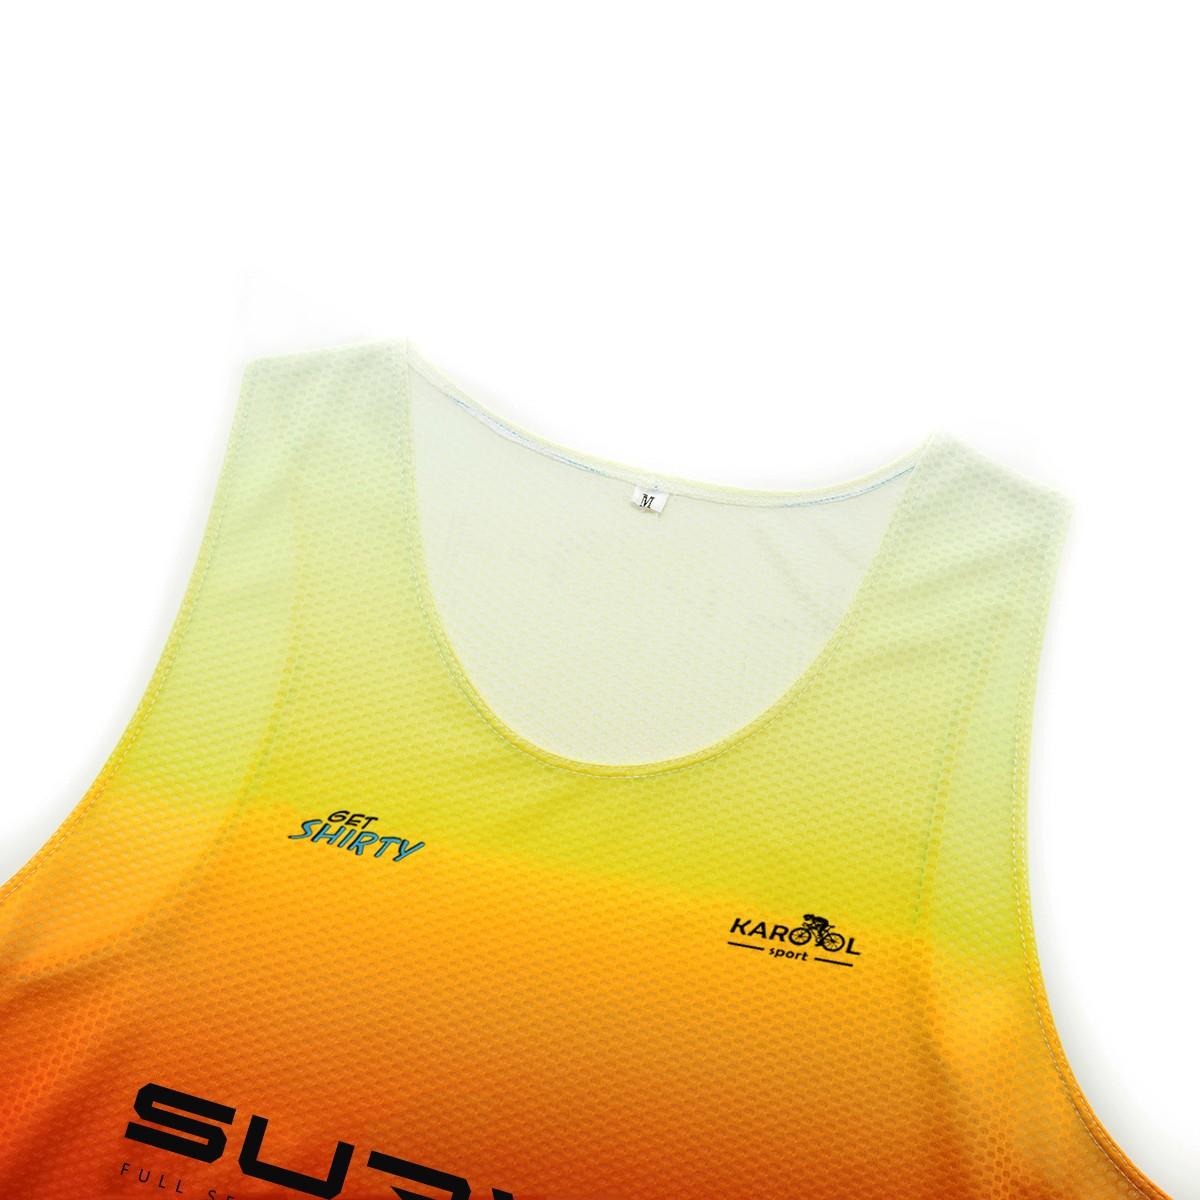 Karool elite running t shirt supplier for sporting-1